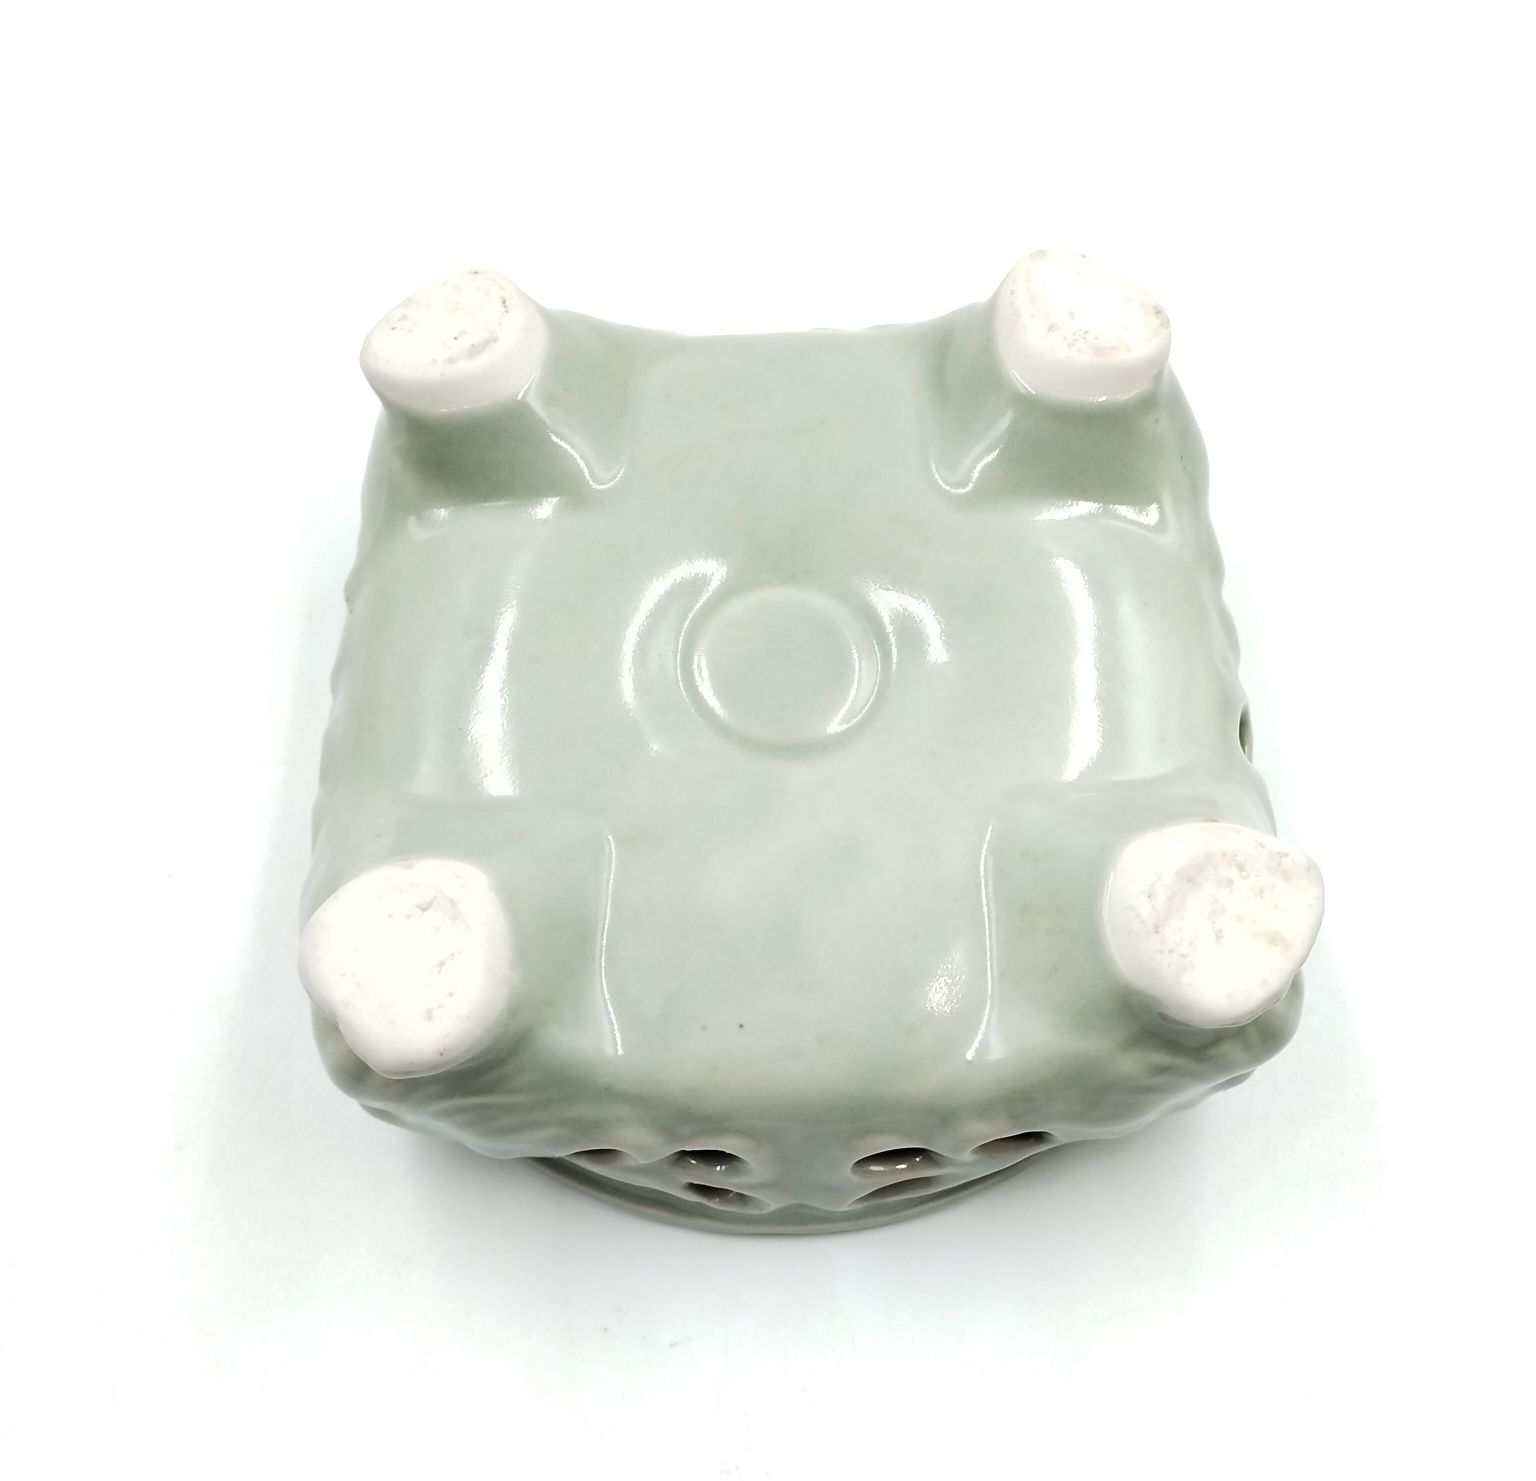 Popielniczka celadon Chiny Korea antyk vintage retro ceramika Azja